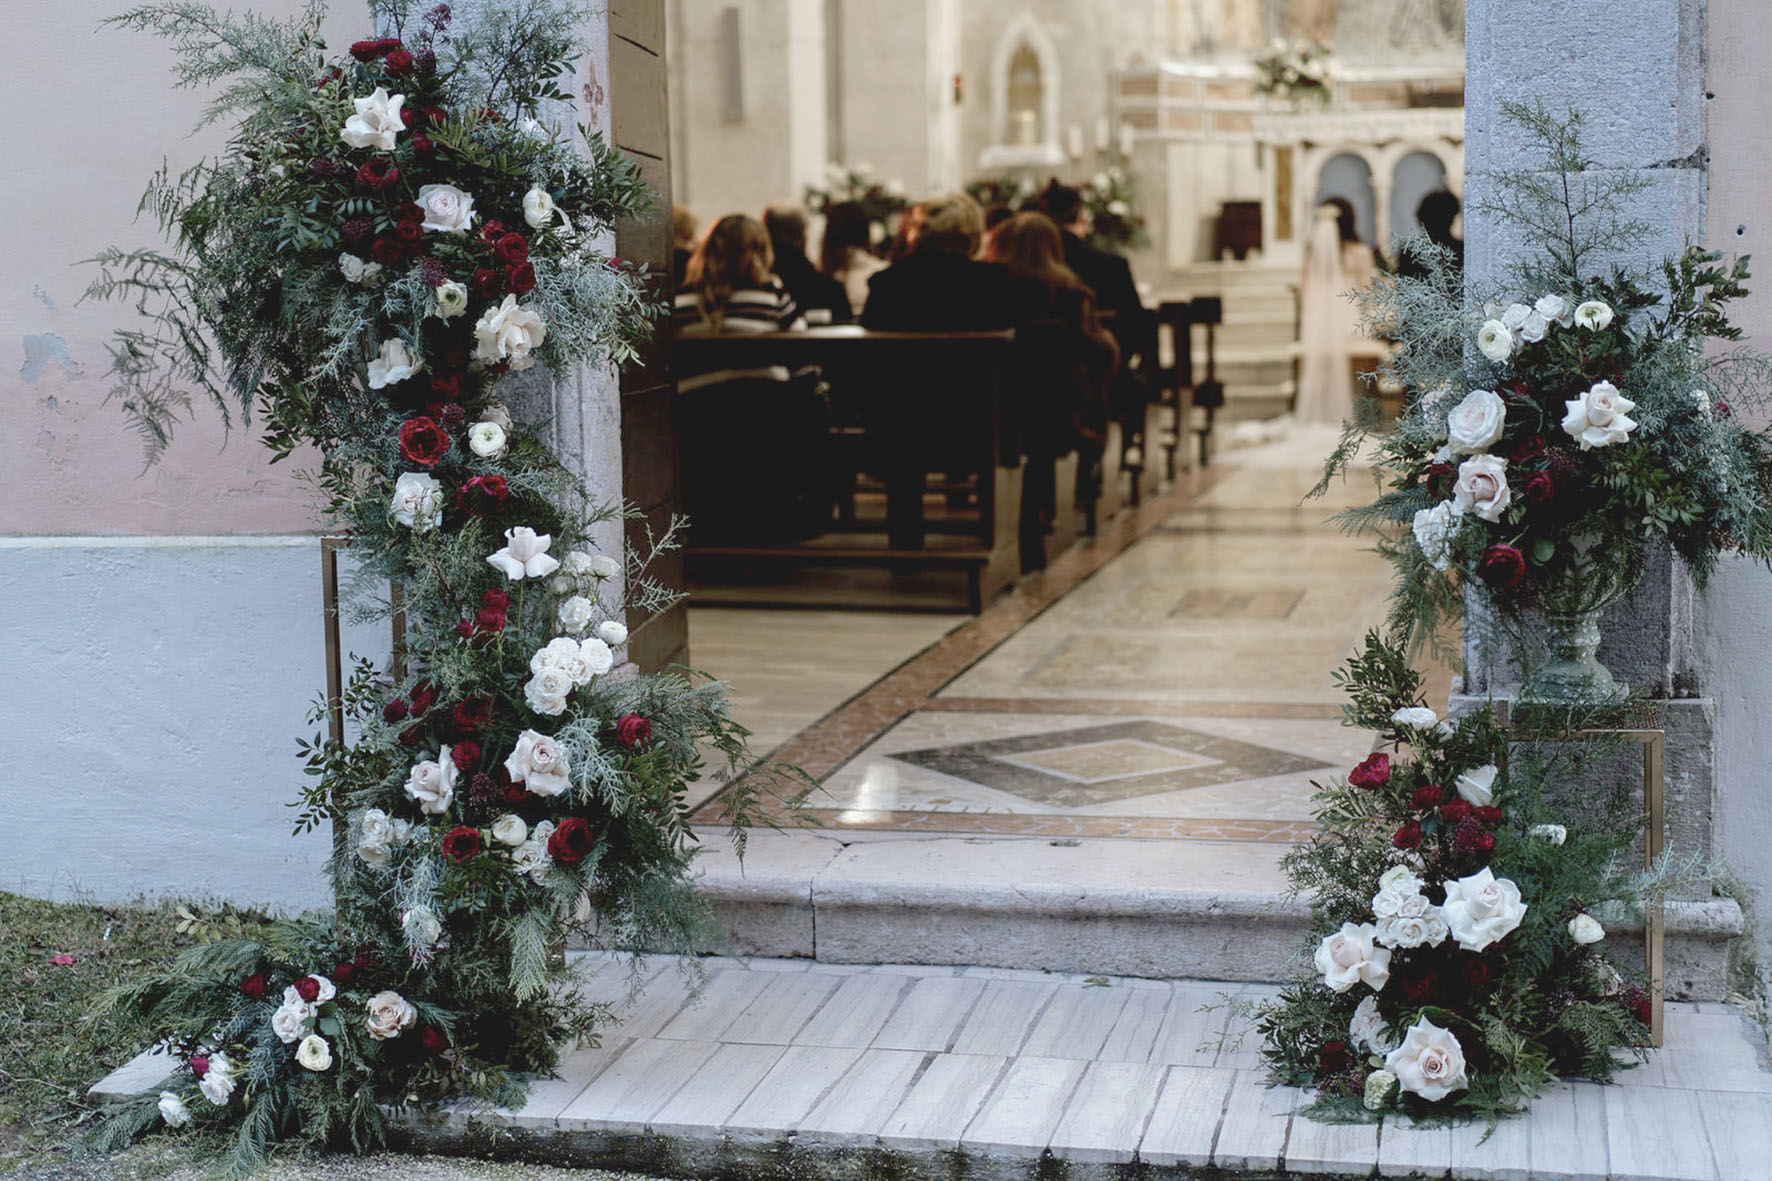 Decorazione floreale ingresso chiesa per matrimonio in inverno, con verdi di stagione e rose bianche e rosse